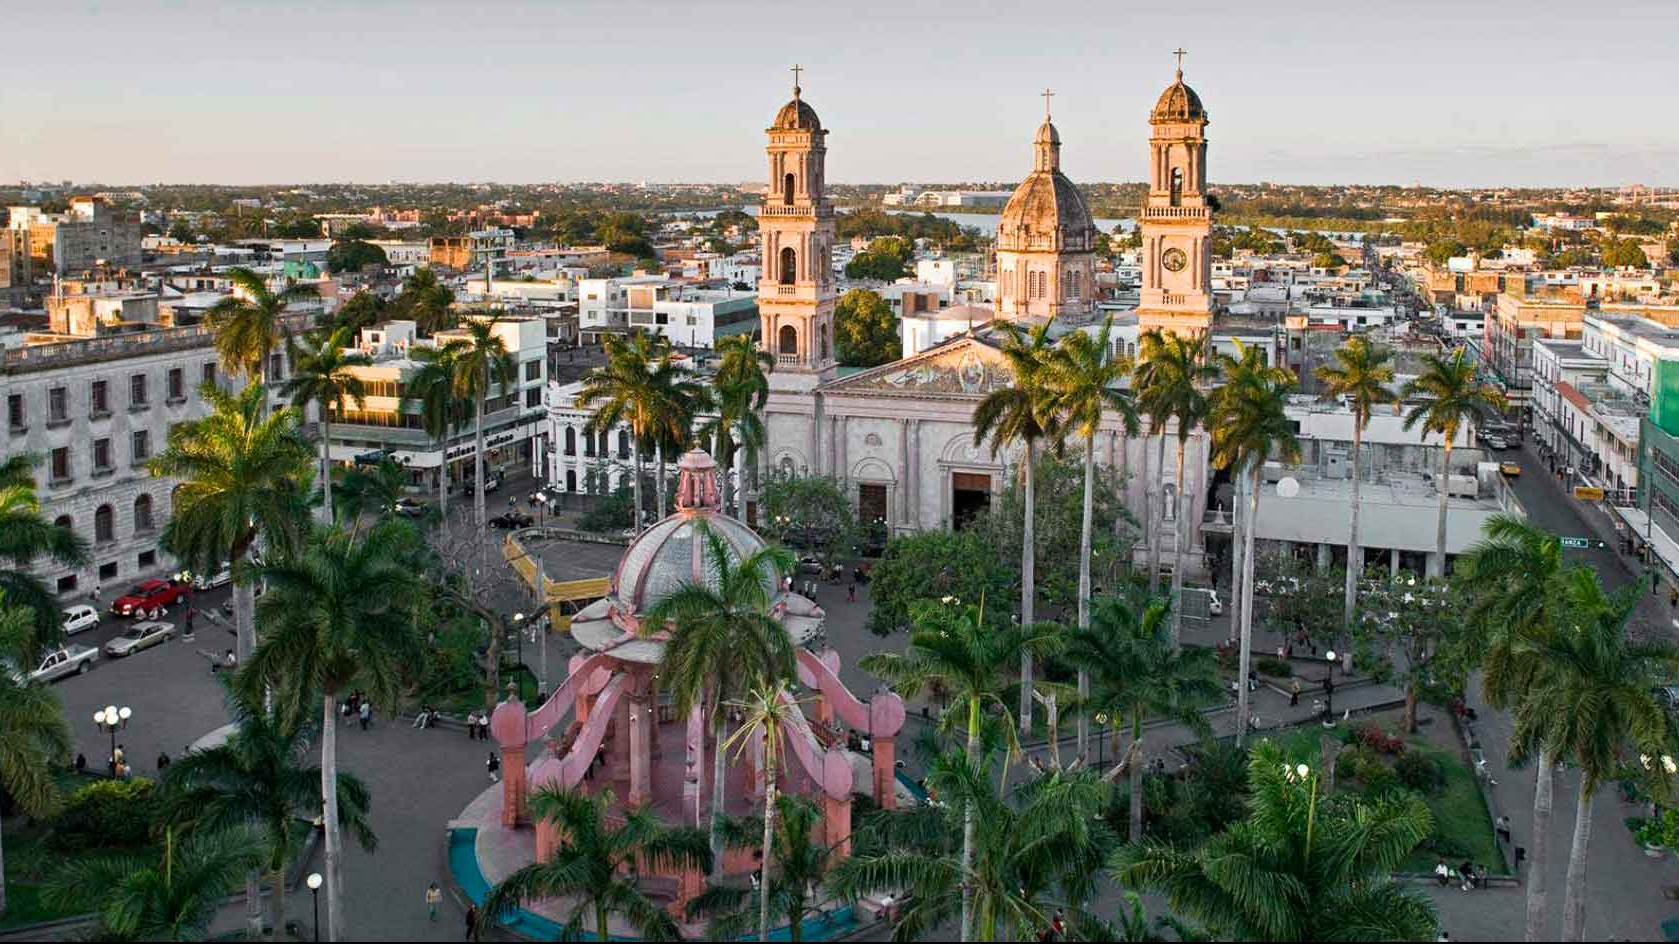 Hoteles lanzan promociones de verano en Tamaulipas